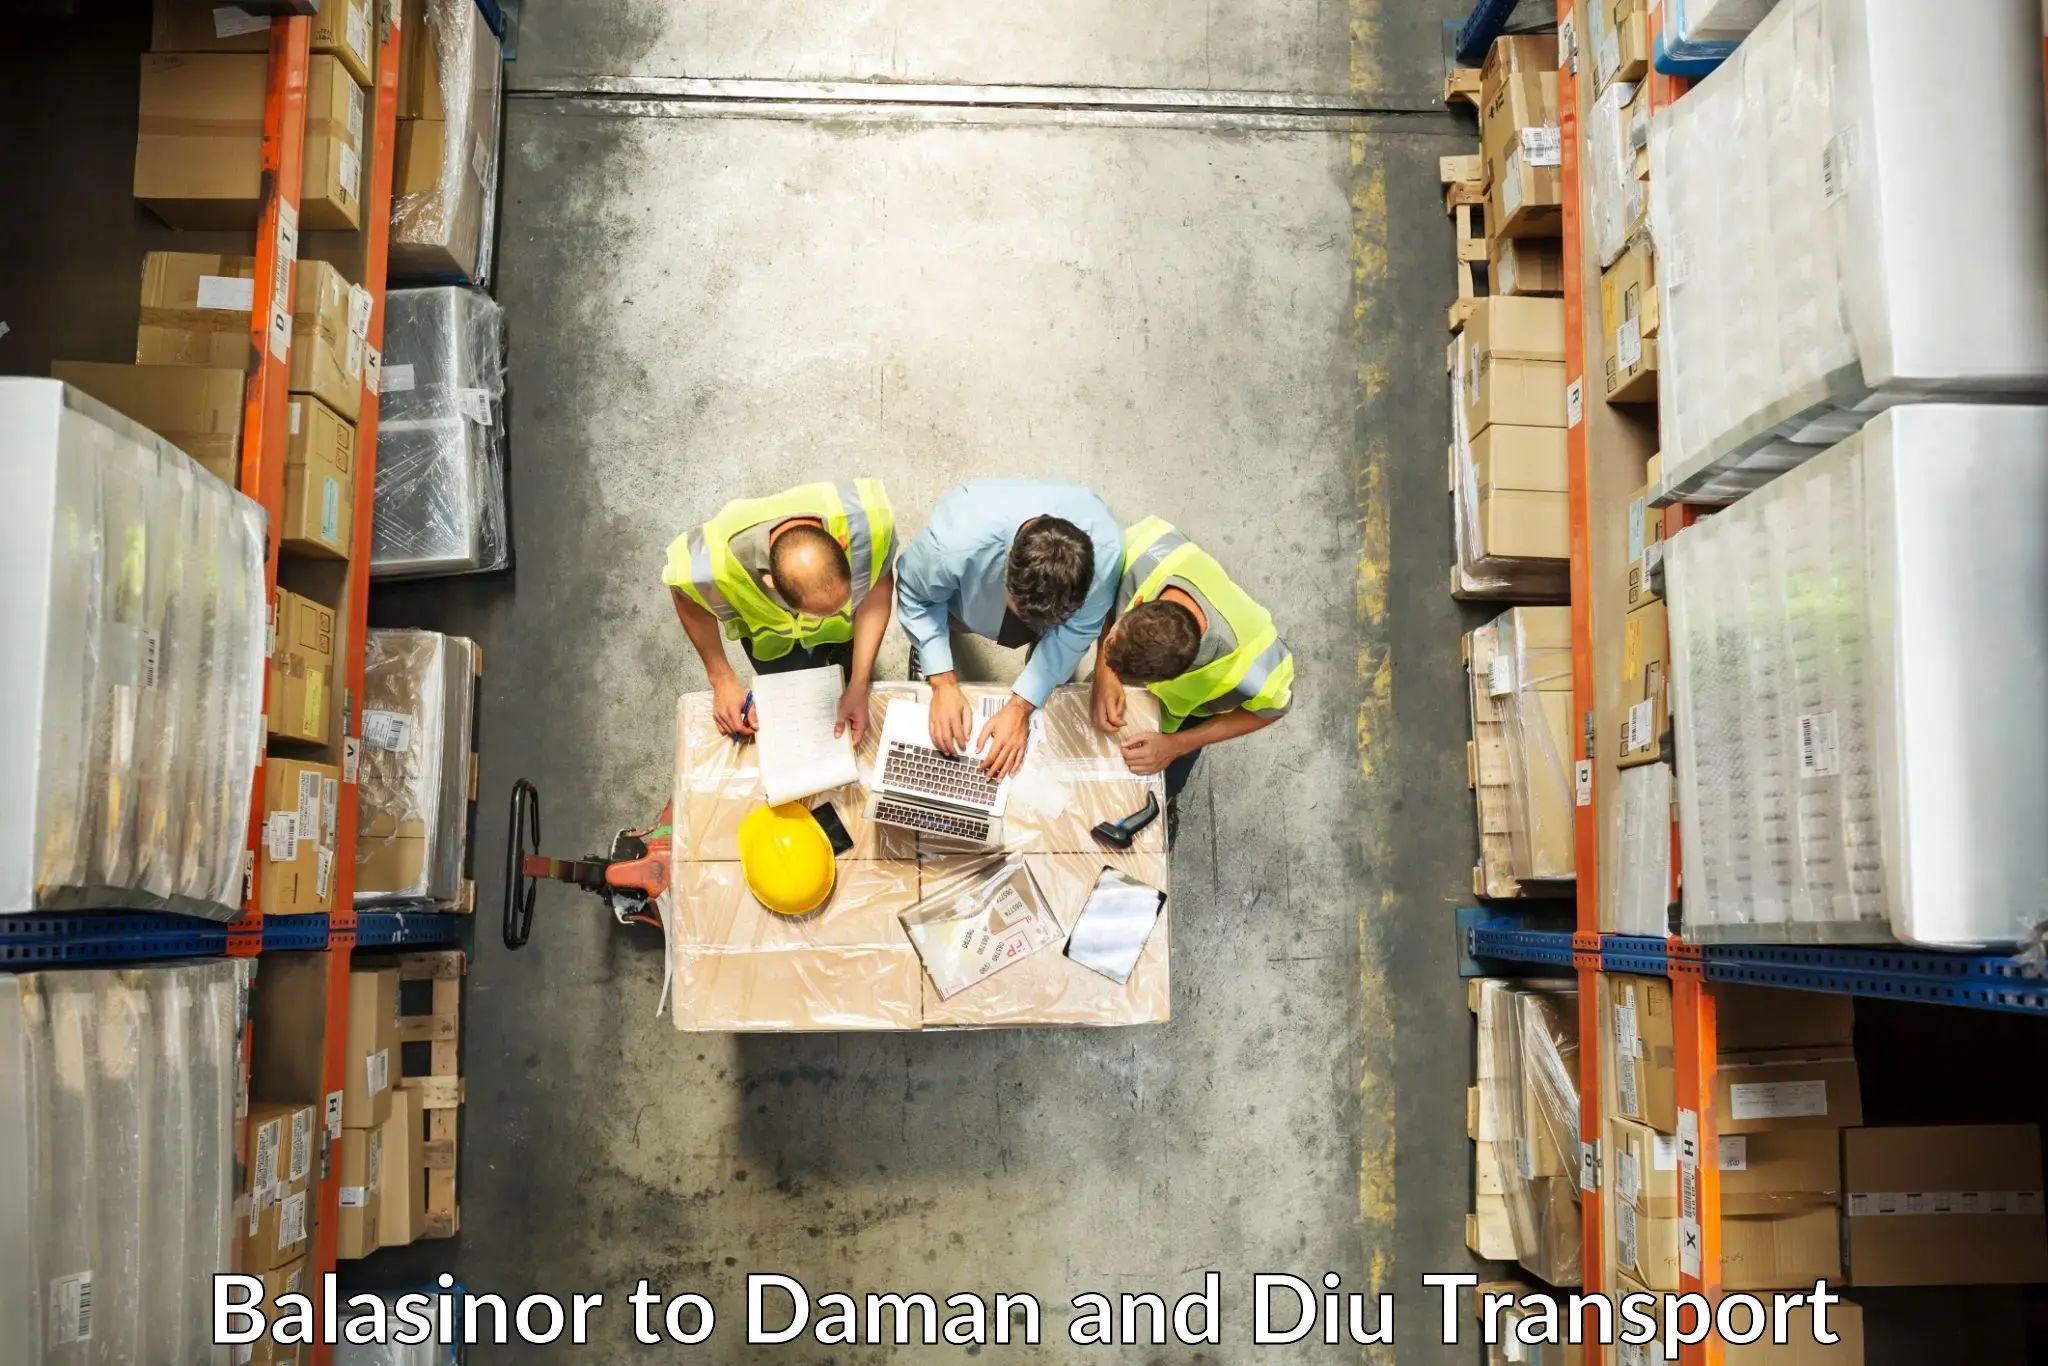 Furniture transport service Balasinor to Daman and Diu